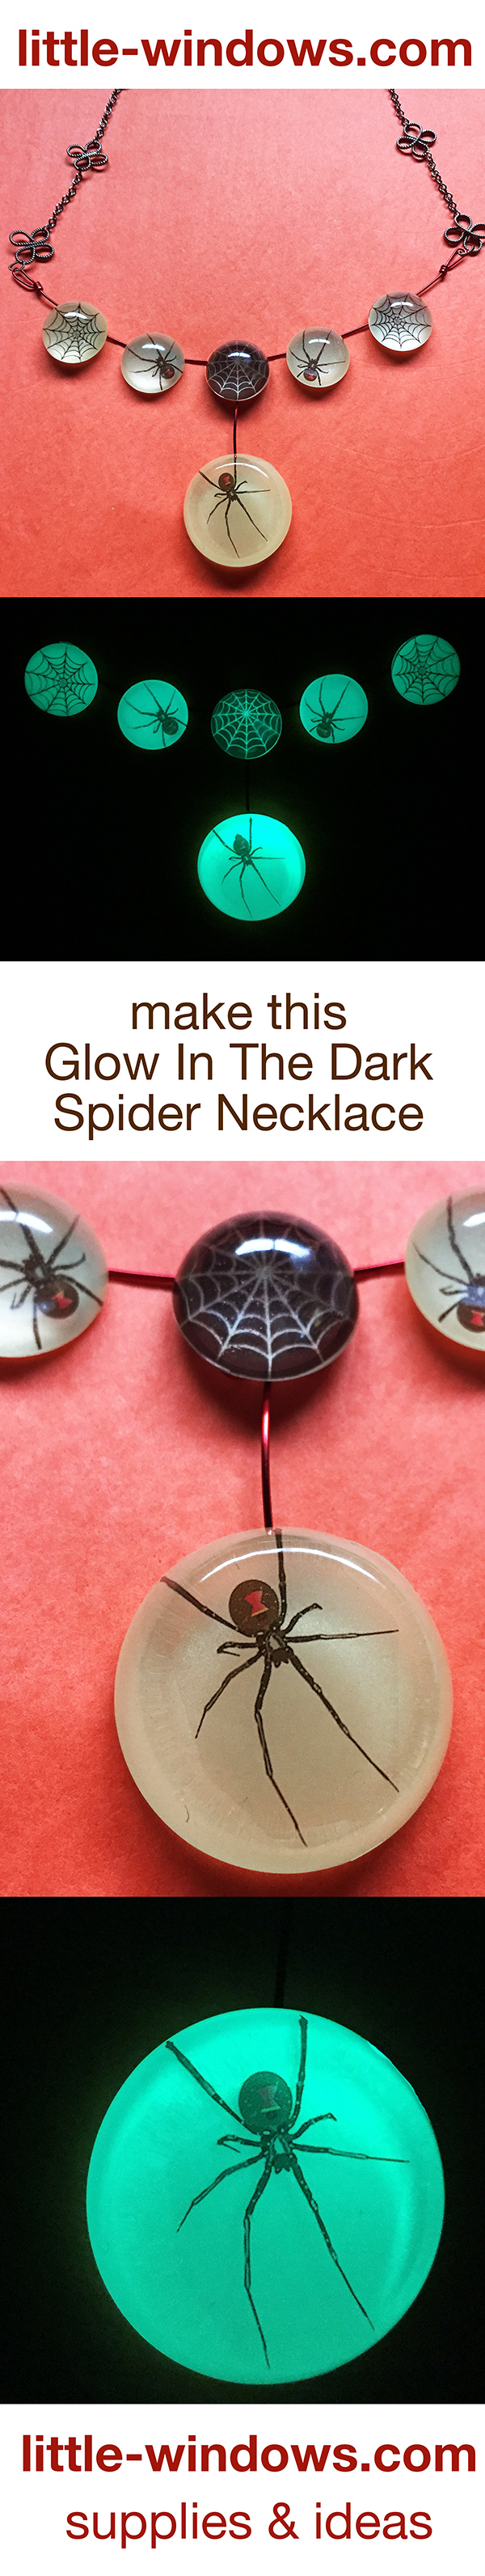 Lots of Glow In The Dark Resin Jewelry Project Ideas! – Little